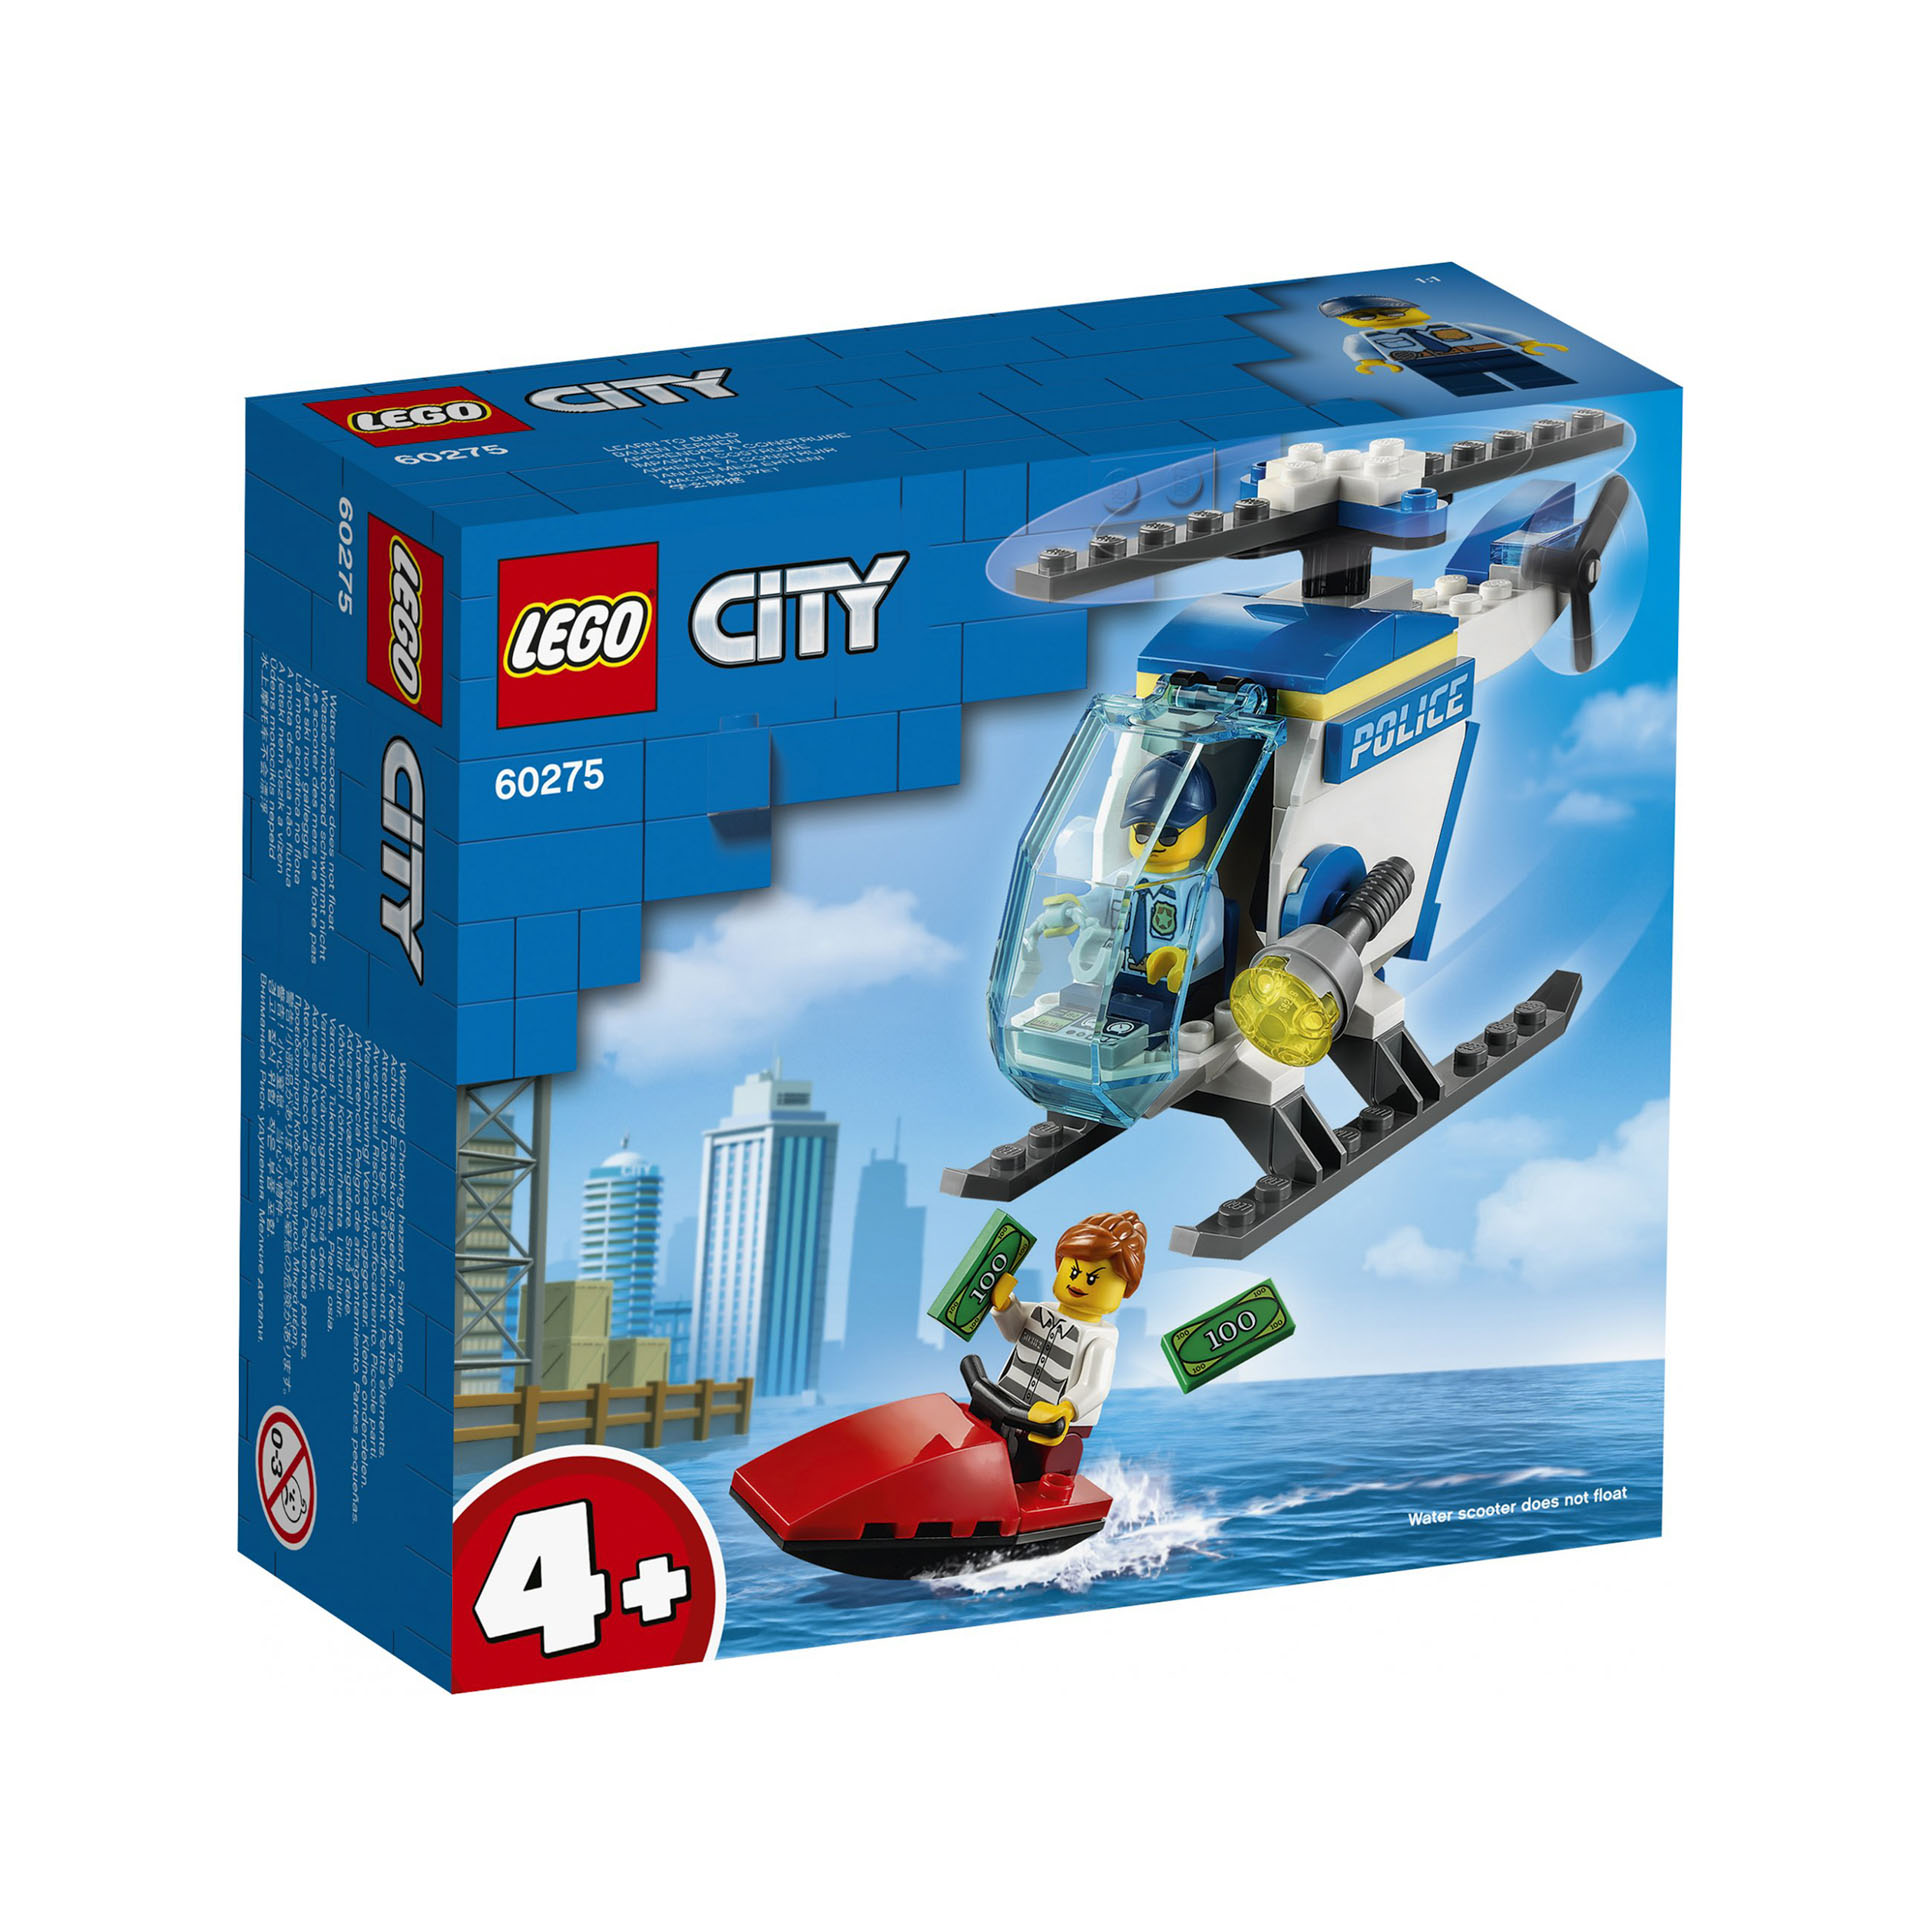 LEGO City Elicottero della Polizia con Minifigure Agente di Polizia e Ladro, per 60275, , large